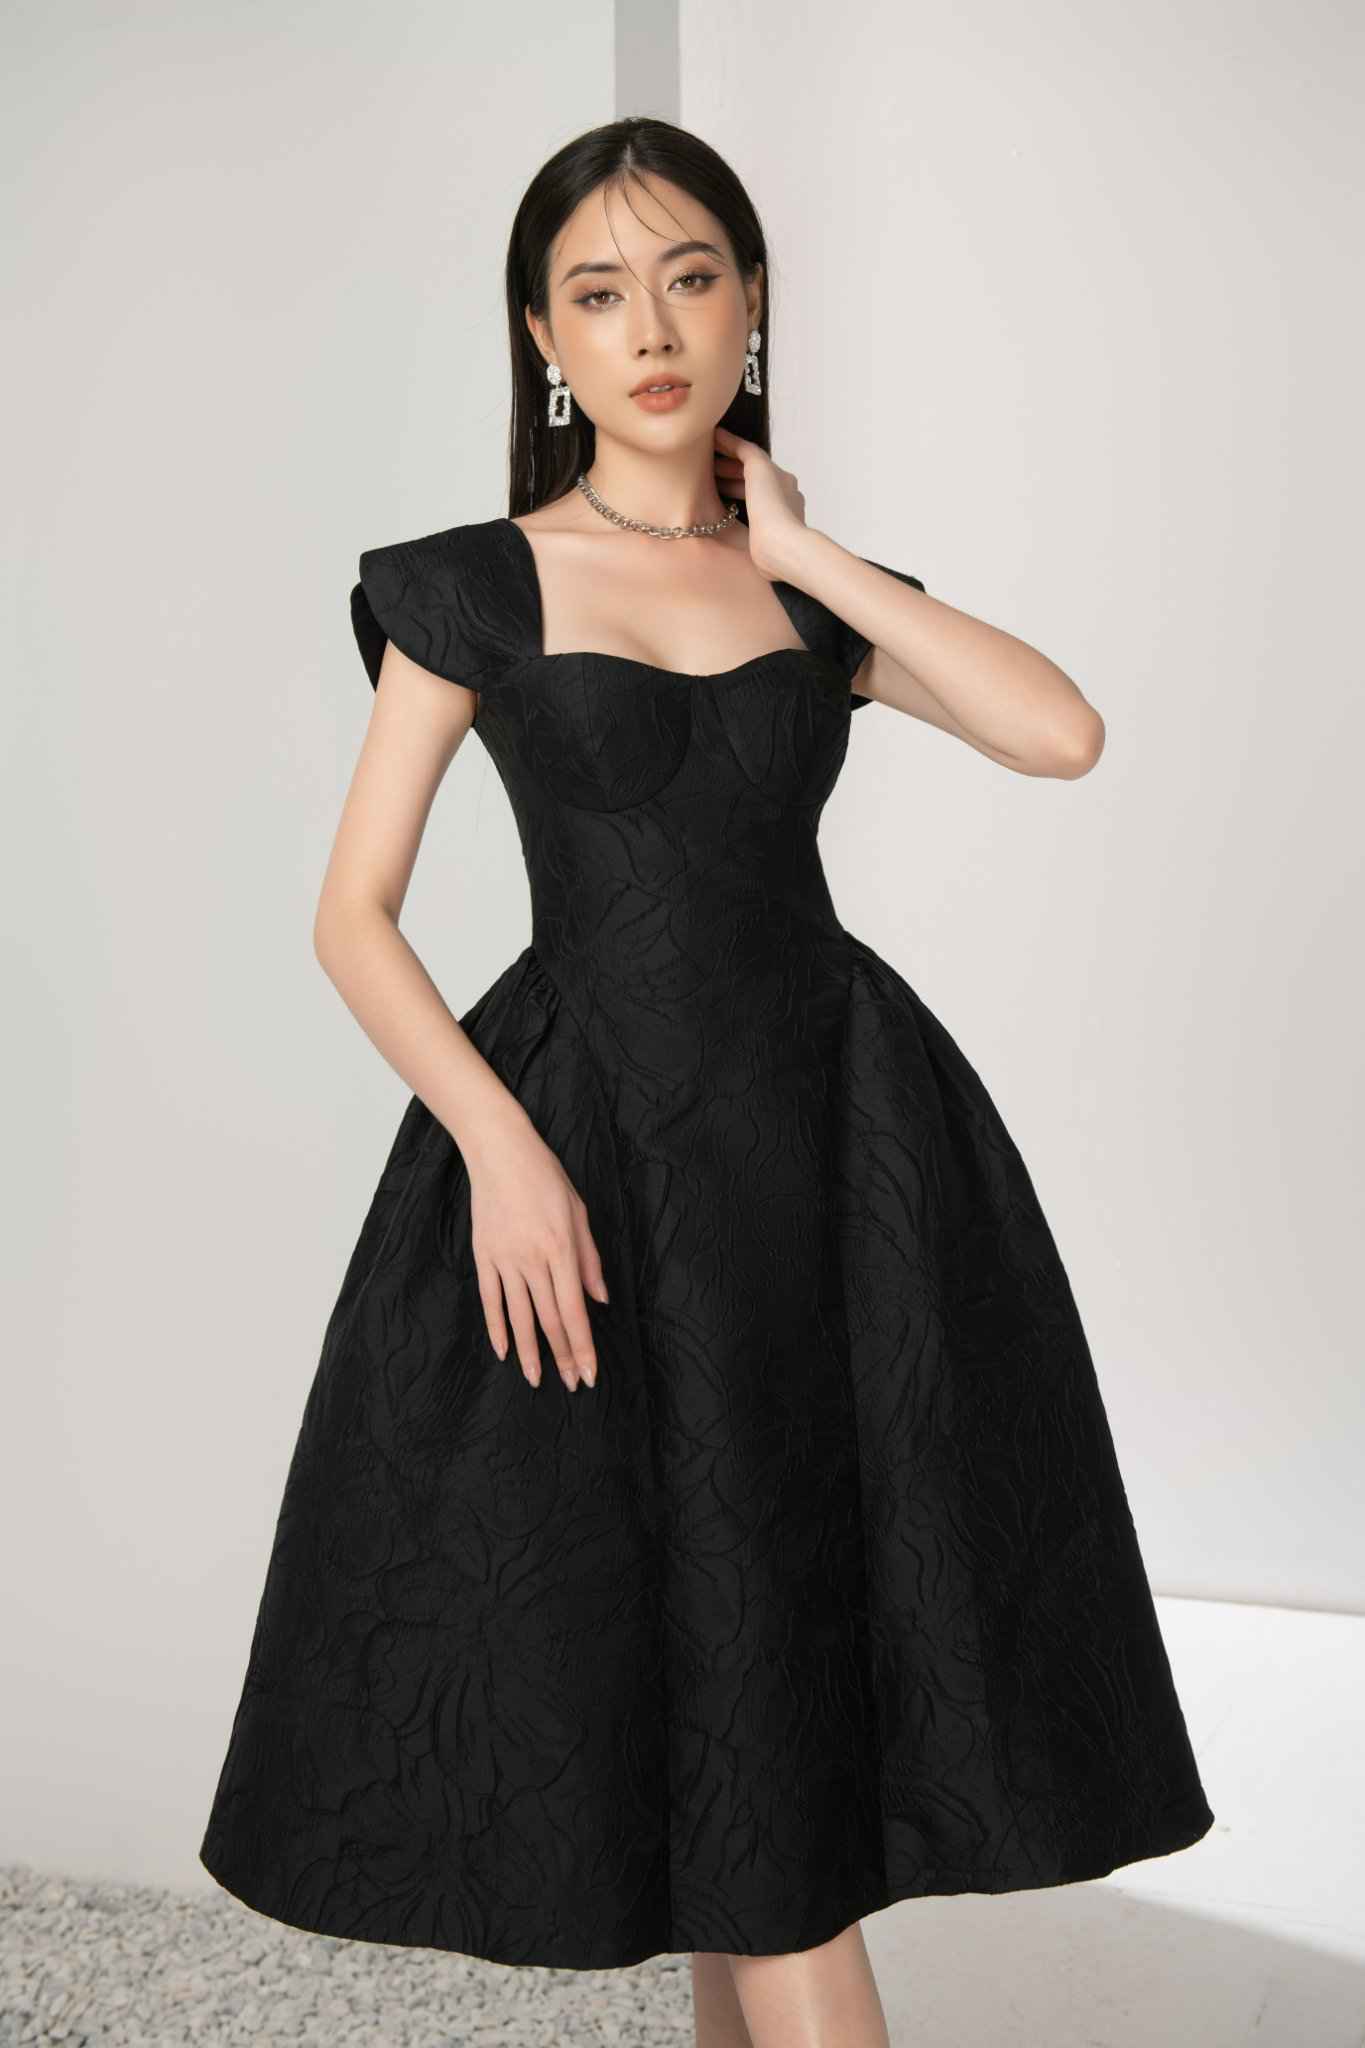 Váy đen  item bất hủ trong tủ đồ phái đẹp